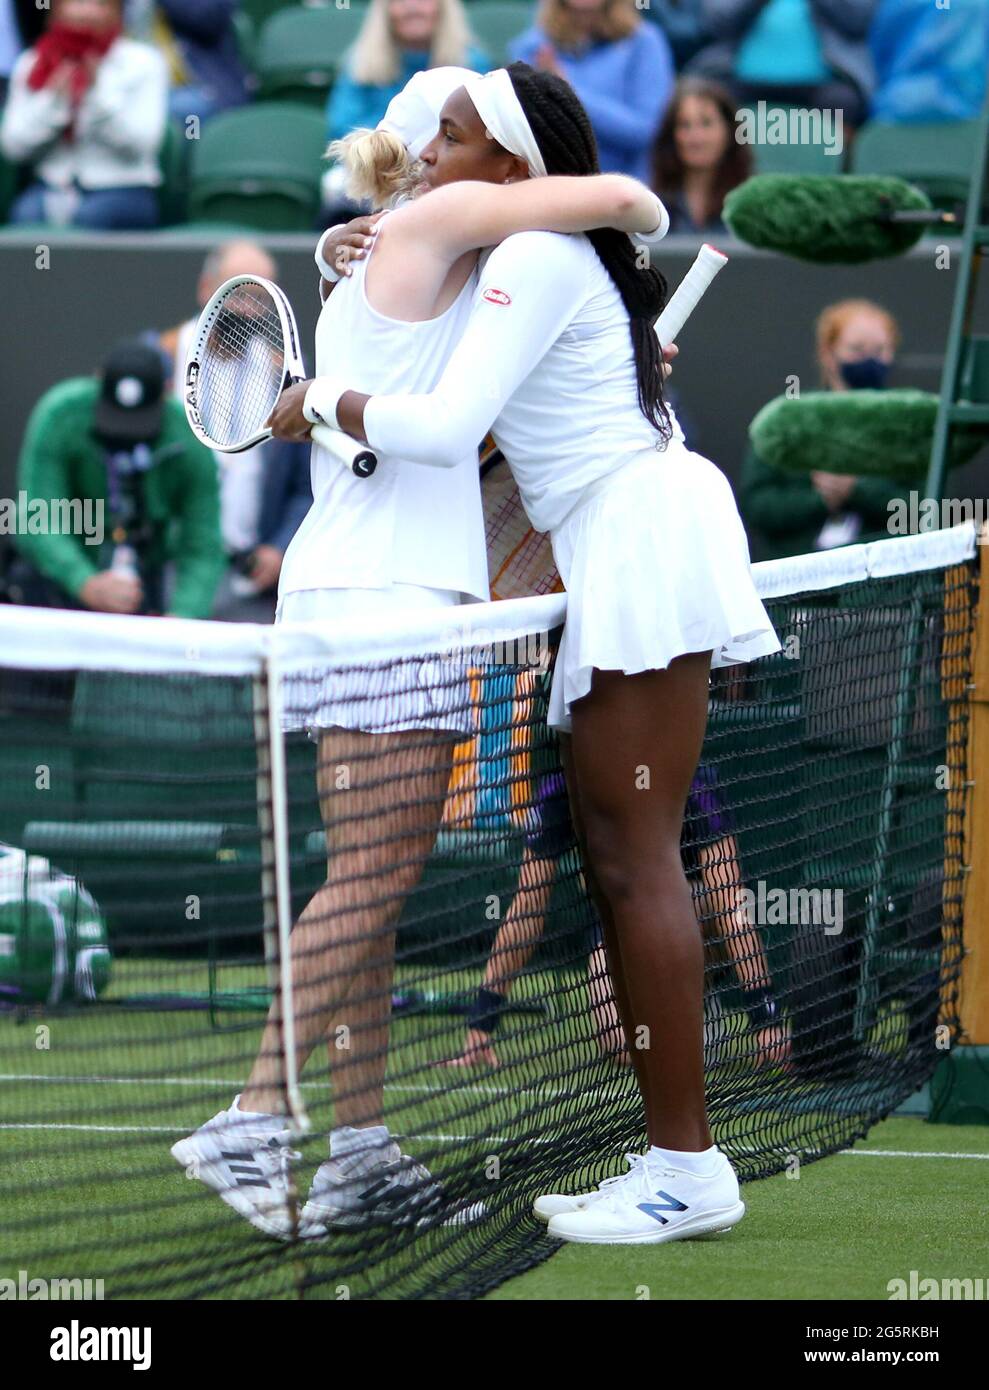 Coco Gauff (rechts) umarmt sich über die Dame, nachdem sie am zweiten Tag von Wimbledon im All England Lawn Tennis and Croquet Club in Wimbledon ihr erstes Damen-Einzelspiel in der Runde auf Platz 2 gewonnen hatte. Bilddatum: Dienstag, 29. Juni 2021. Stockfoto